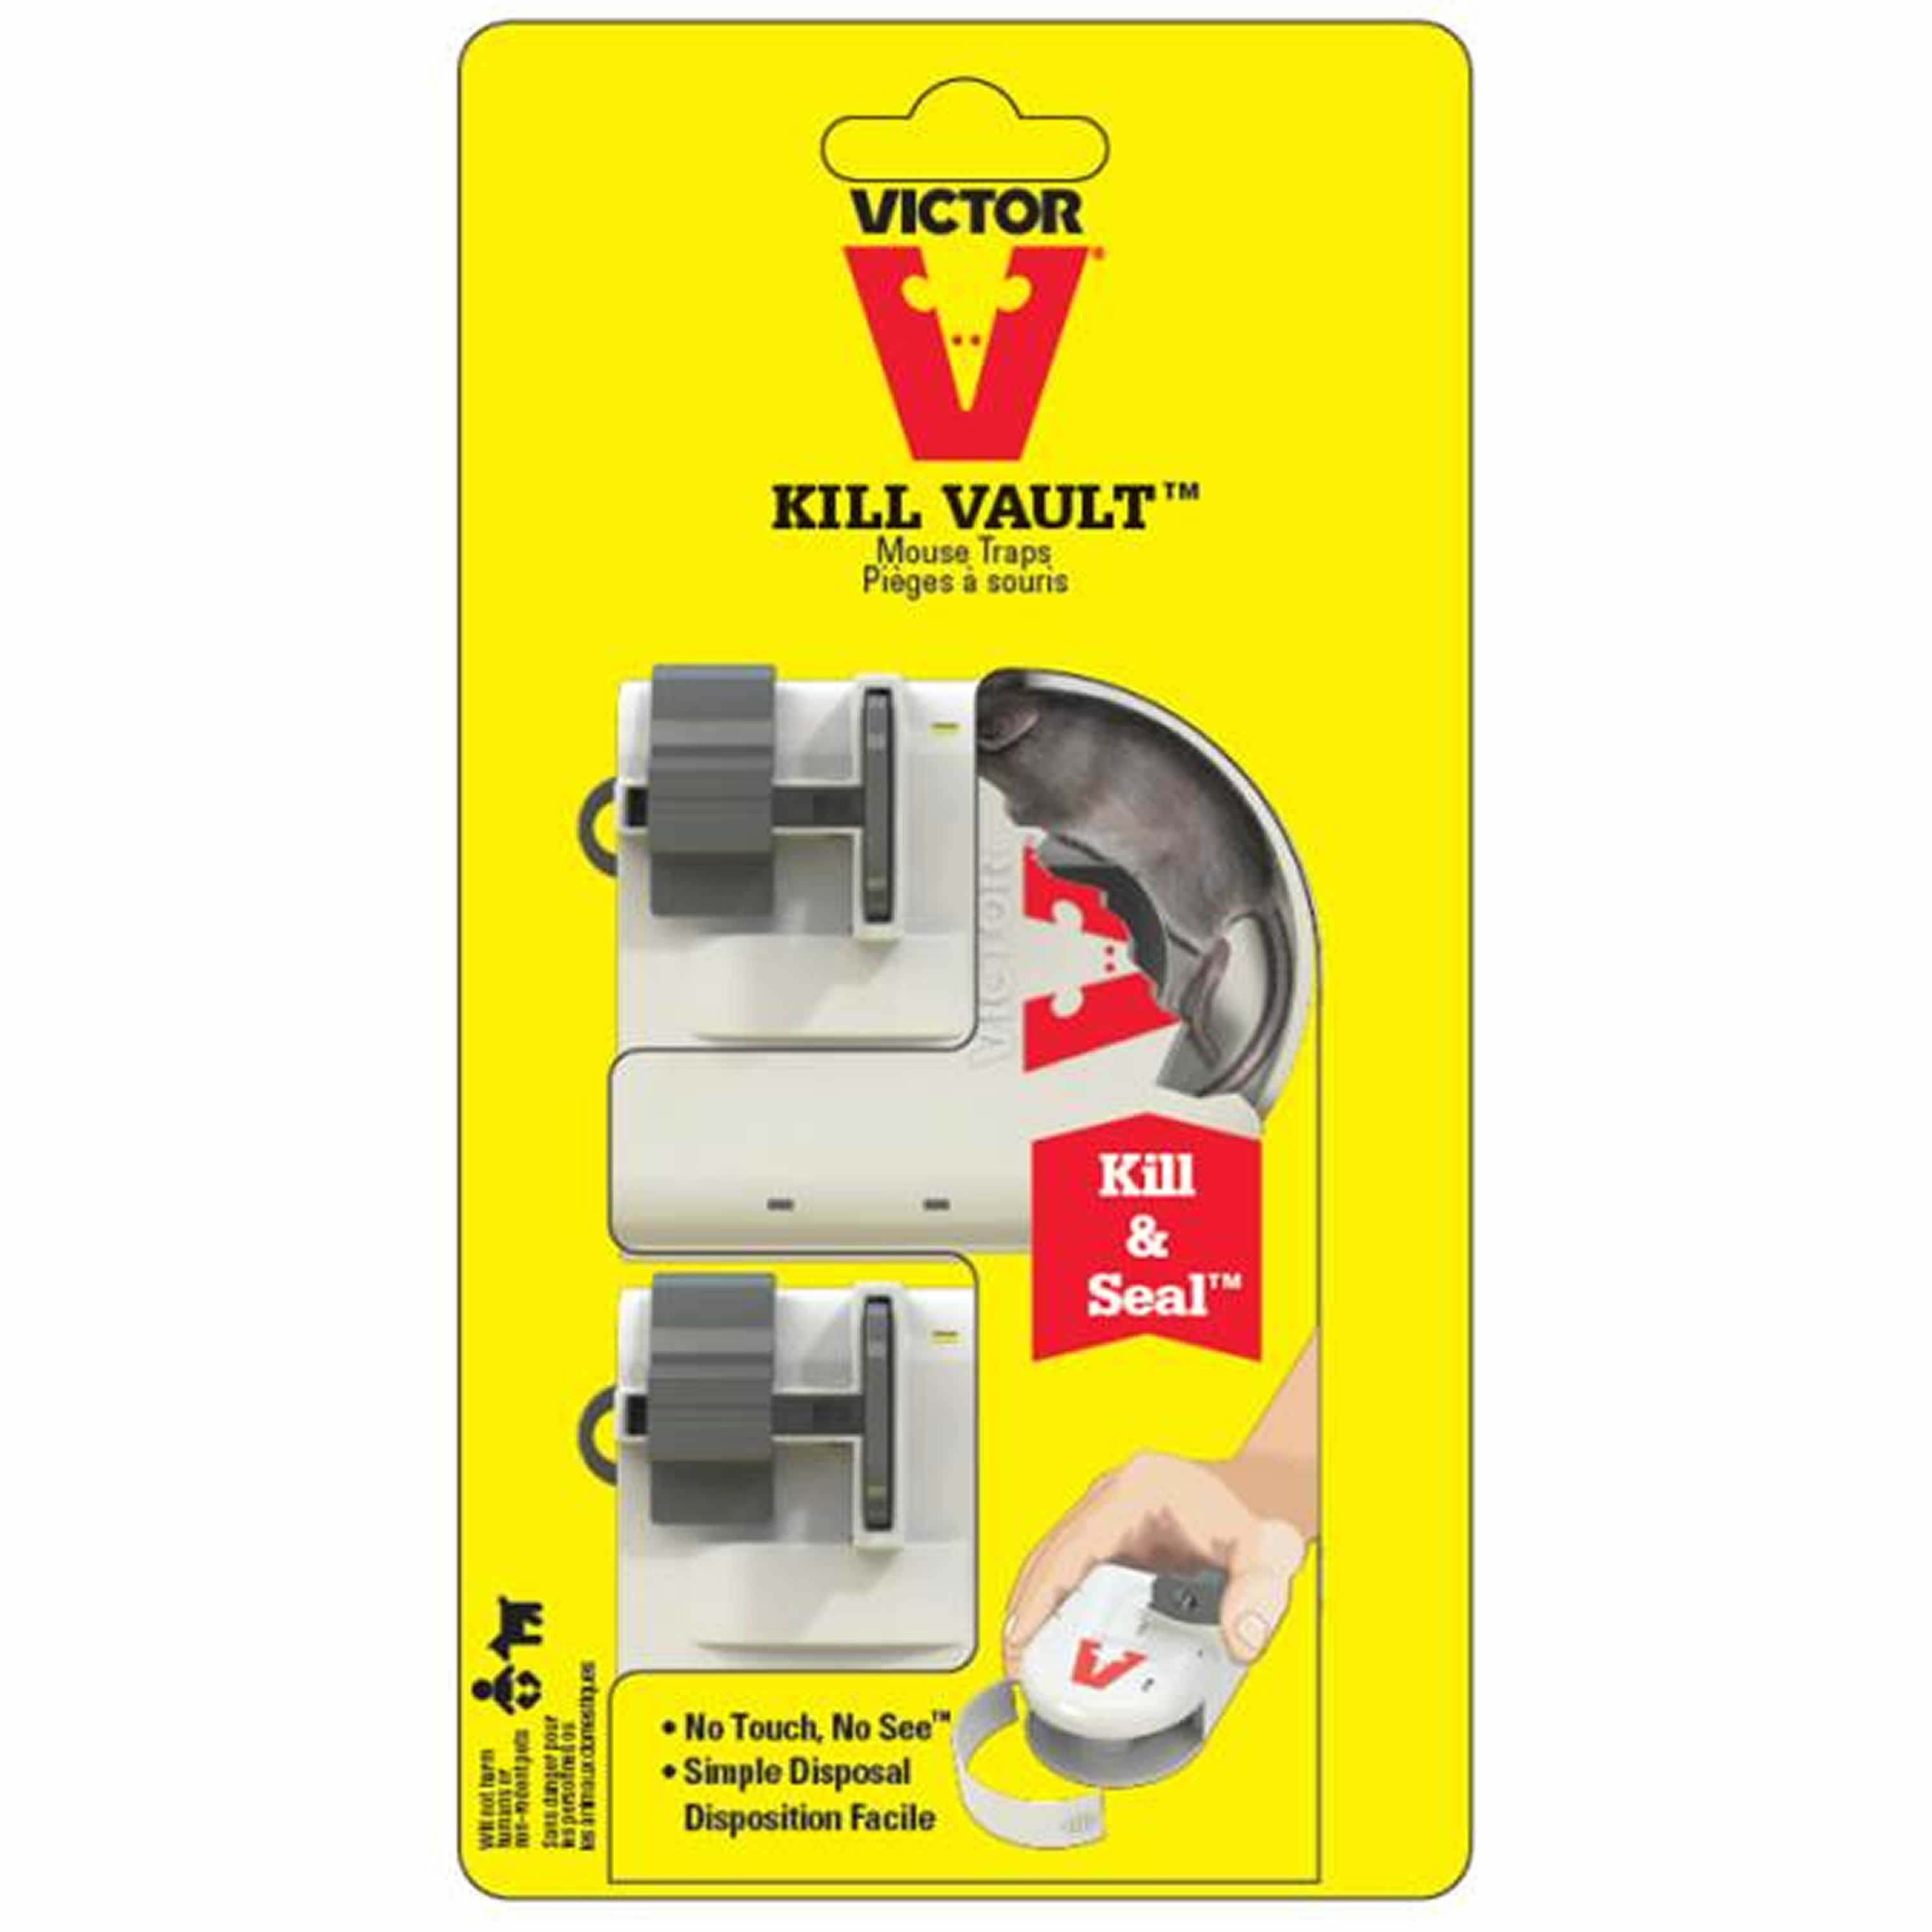 Hygienická past na myši Victor® Kill Vault Mouse M267 balení 2 ks pro potravinářství